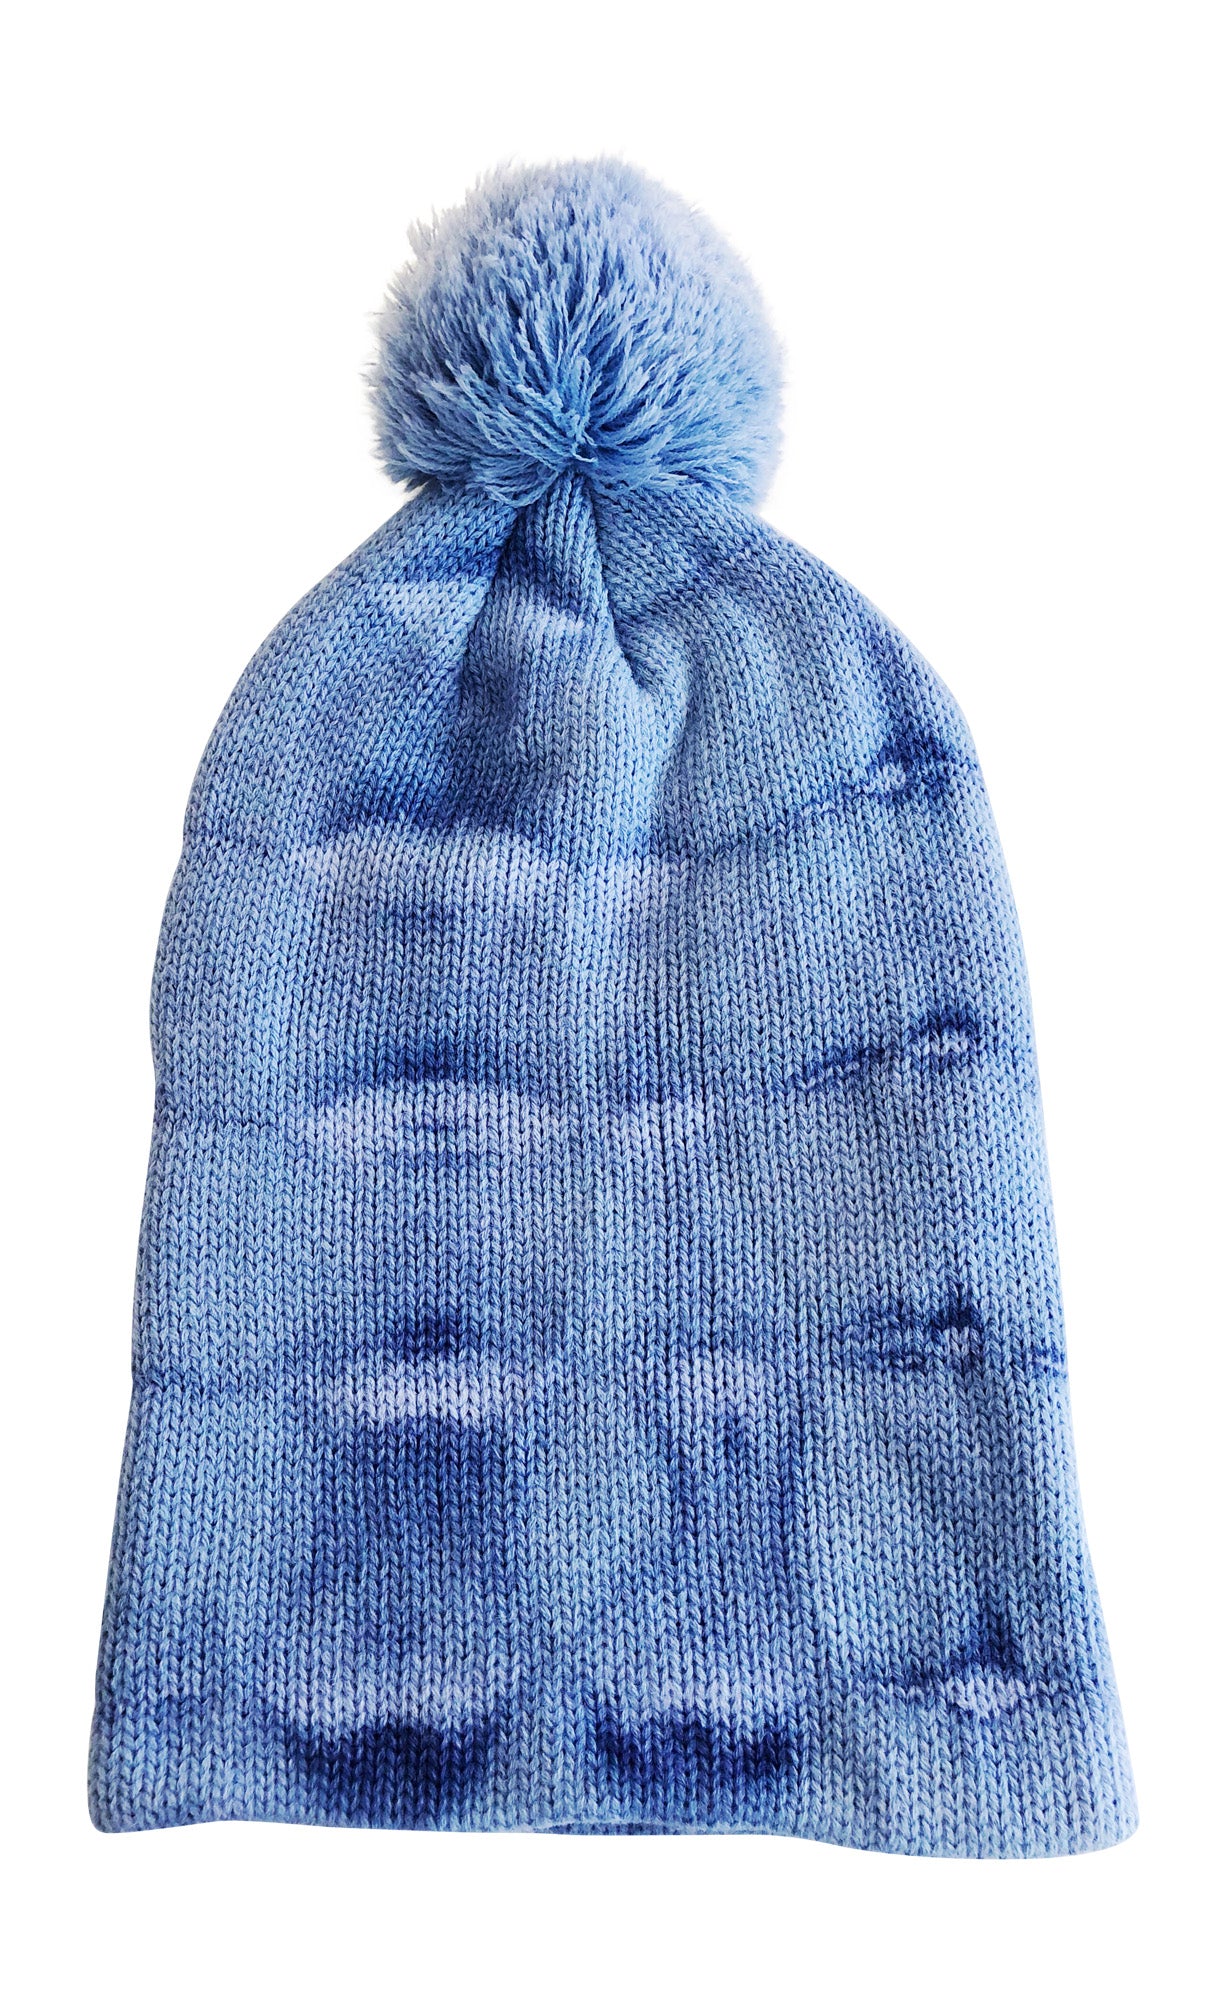 Adult Pom Pom Beanie Blue Tie Dye Ski Hat